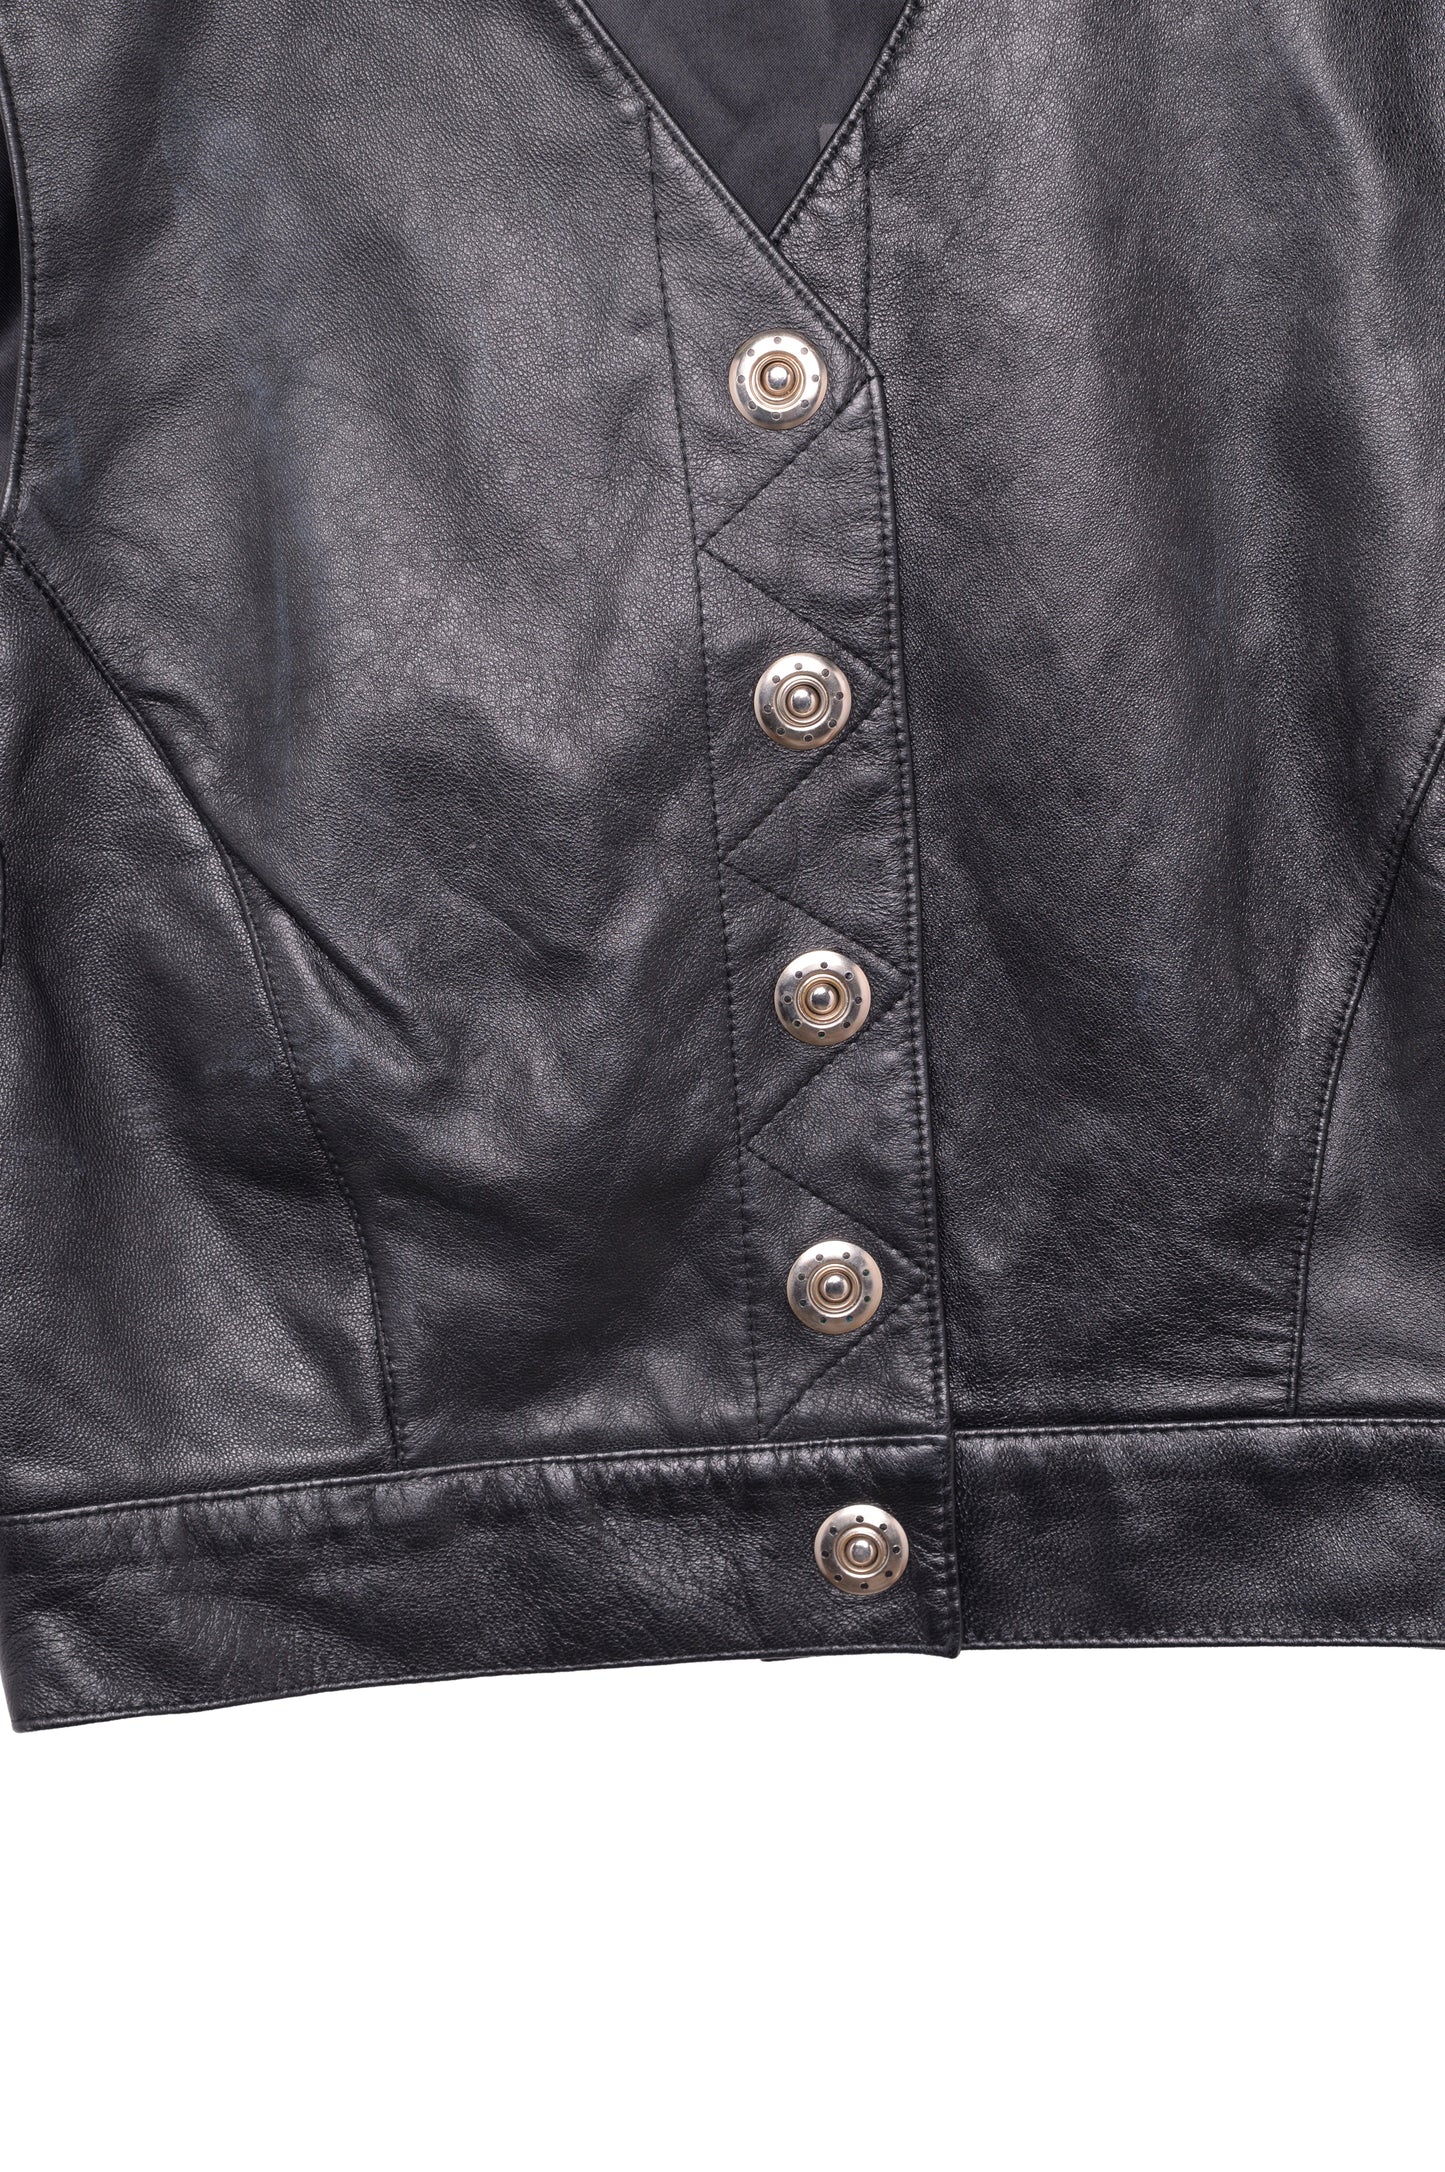 Leather Moto Vest